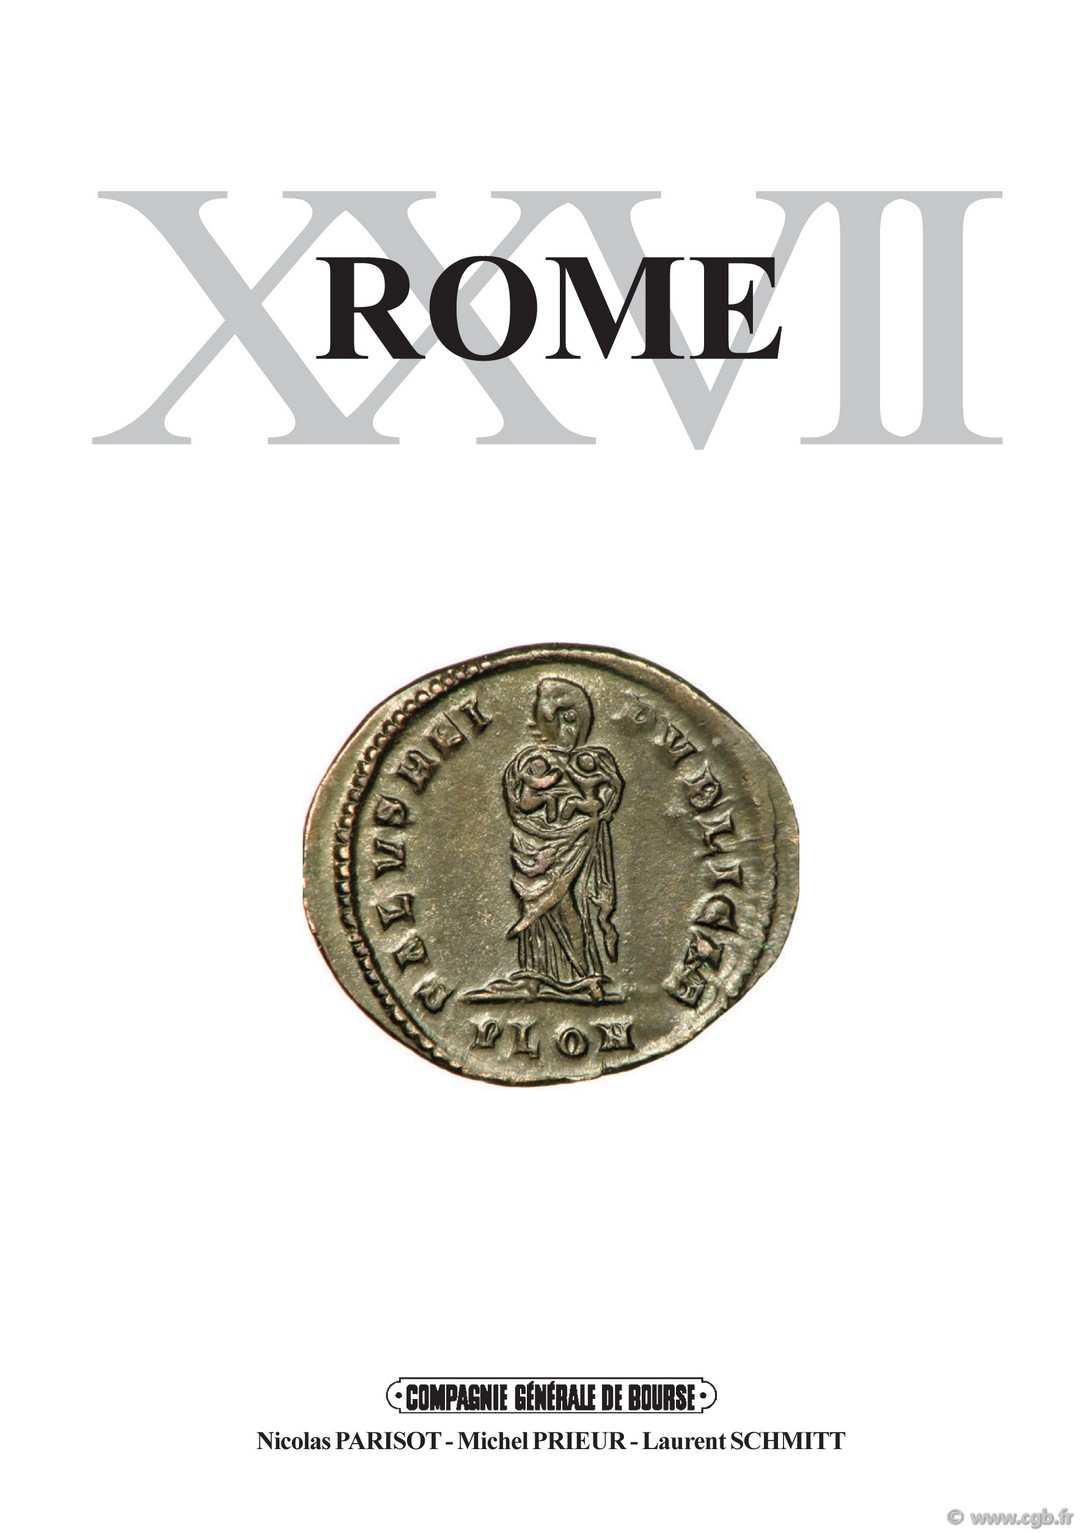 ROME 27 - le monnayage de bronze de l atelier de Londres (323-325), monnaies romaines de la république à Léon Ier PARISOT Nicolas, PRIEUR Michel, SCHMITT Laurent